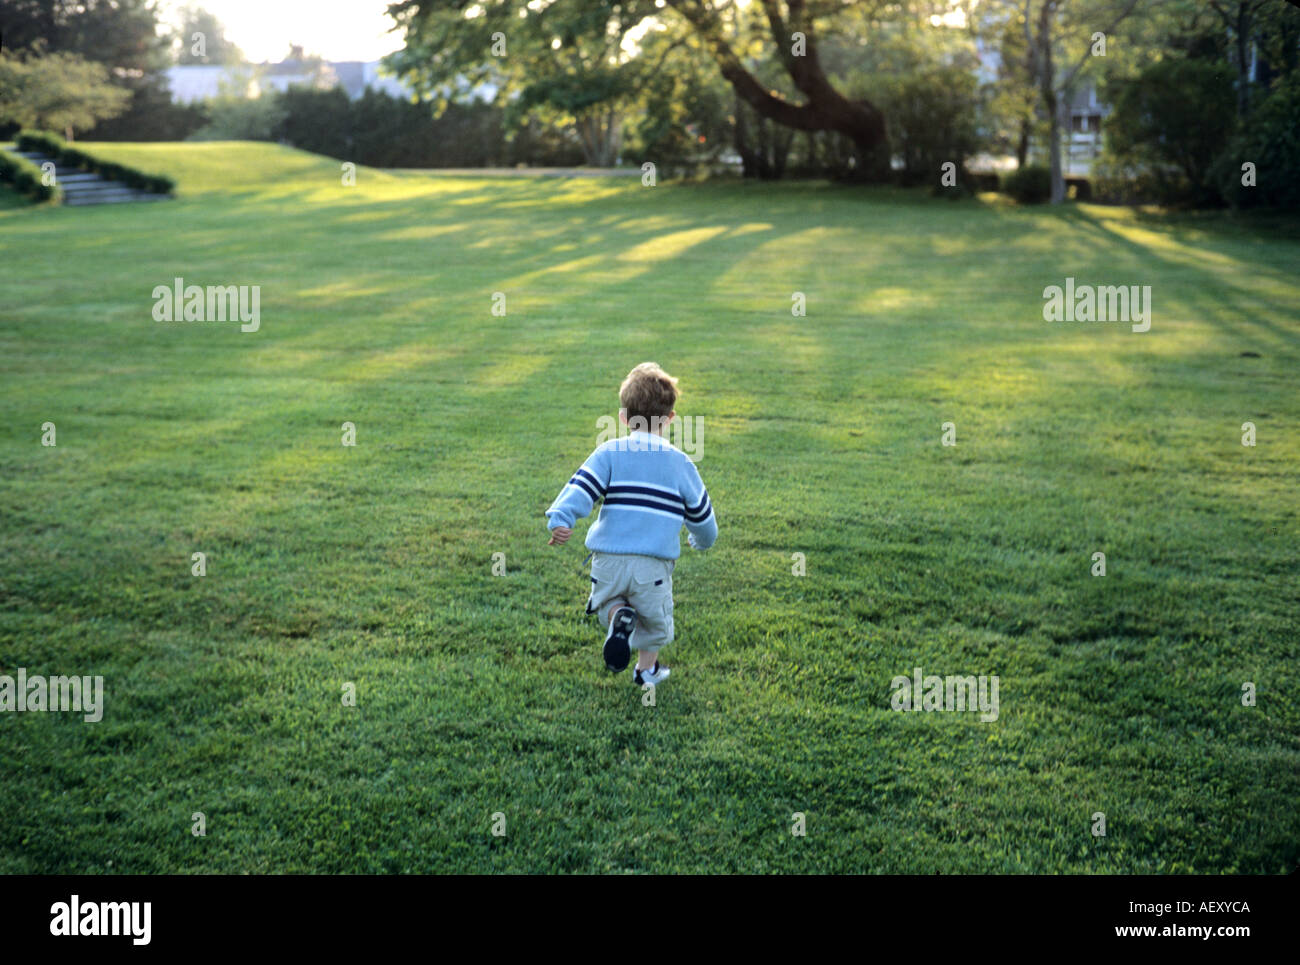 Petit enfant courir sur une pelouse verte. Un joyeux garçon espiègle. Vacances d'été. La liberté Banque D'Images